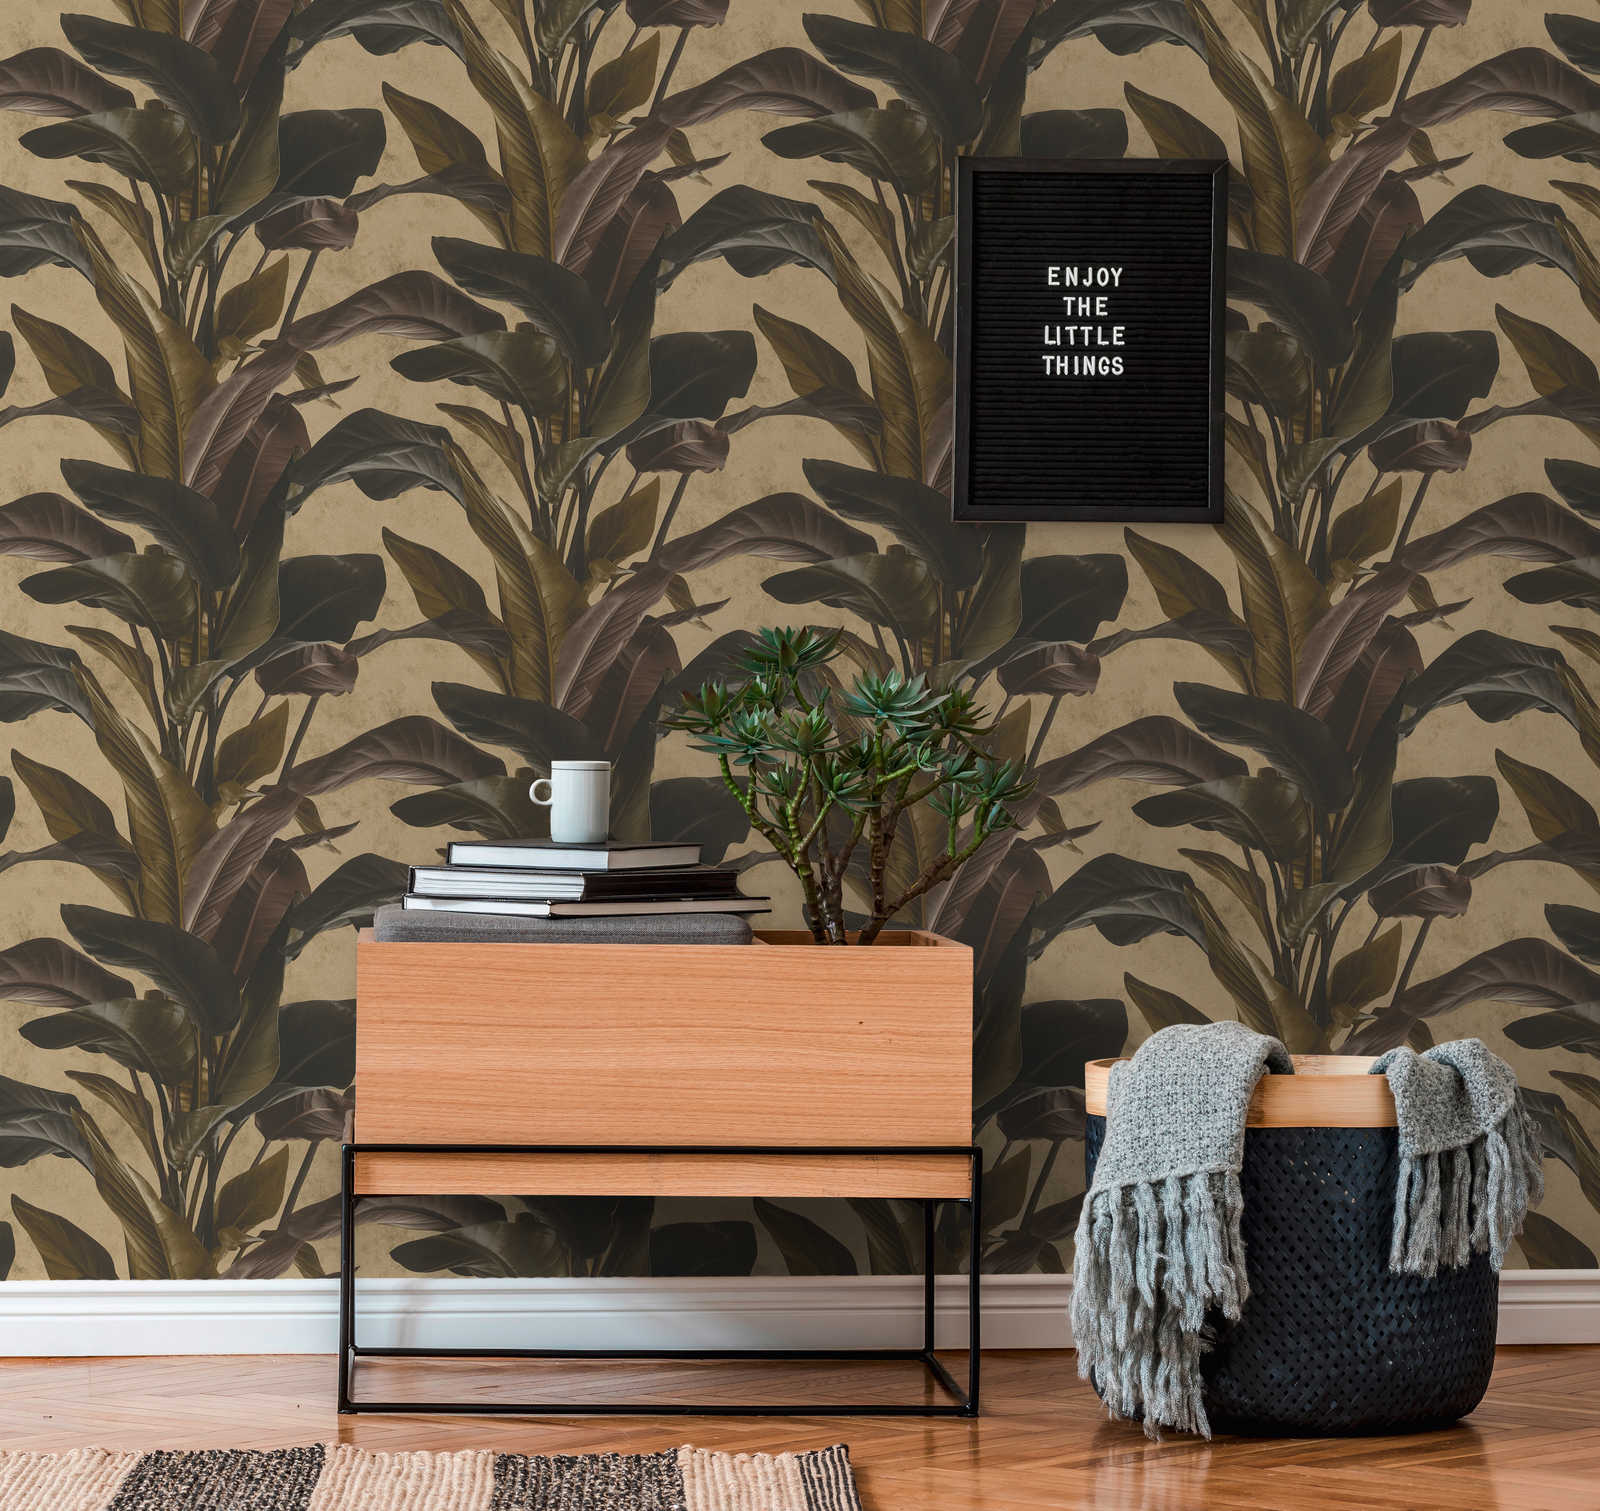             Wallpaper with natural design & metallic luster - brown, metallic, black
        